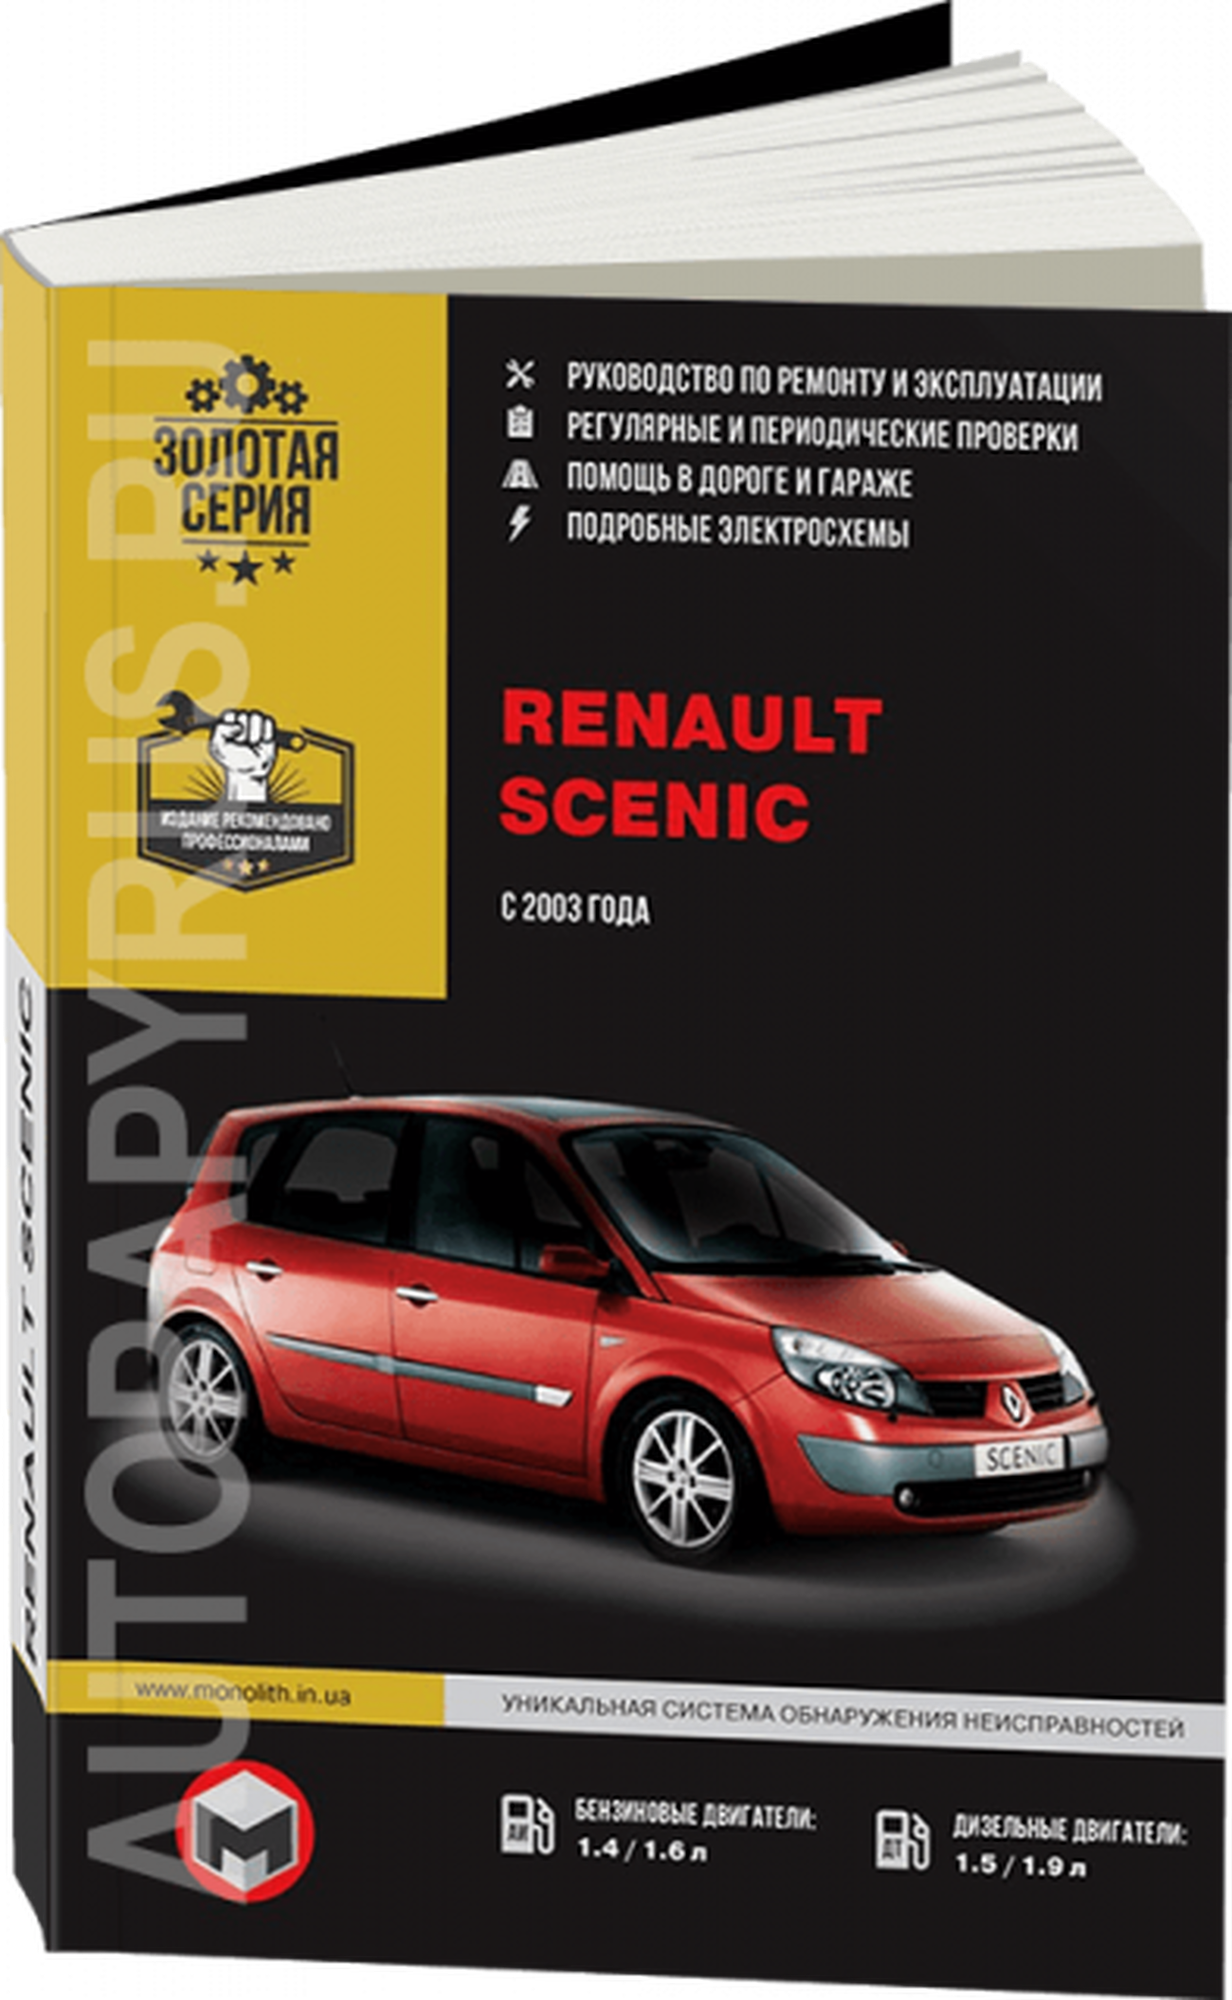 Автокнига: руководство / инструкция по ремонту и эксплуатации RENAULT SCENIC (рено сценик) бензин / дизель с 2003 года выпуска, 967-854-619-1, издательство Монолит